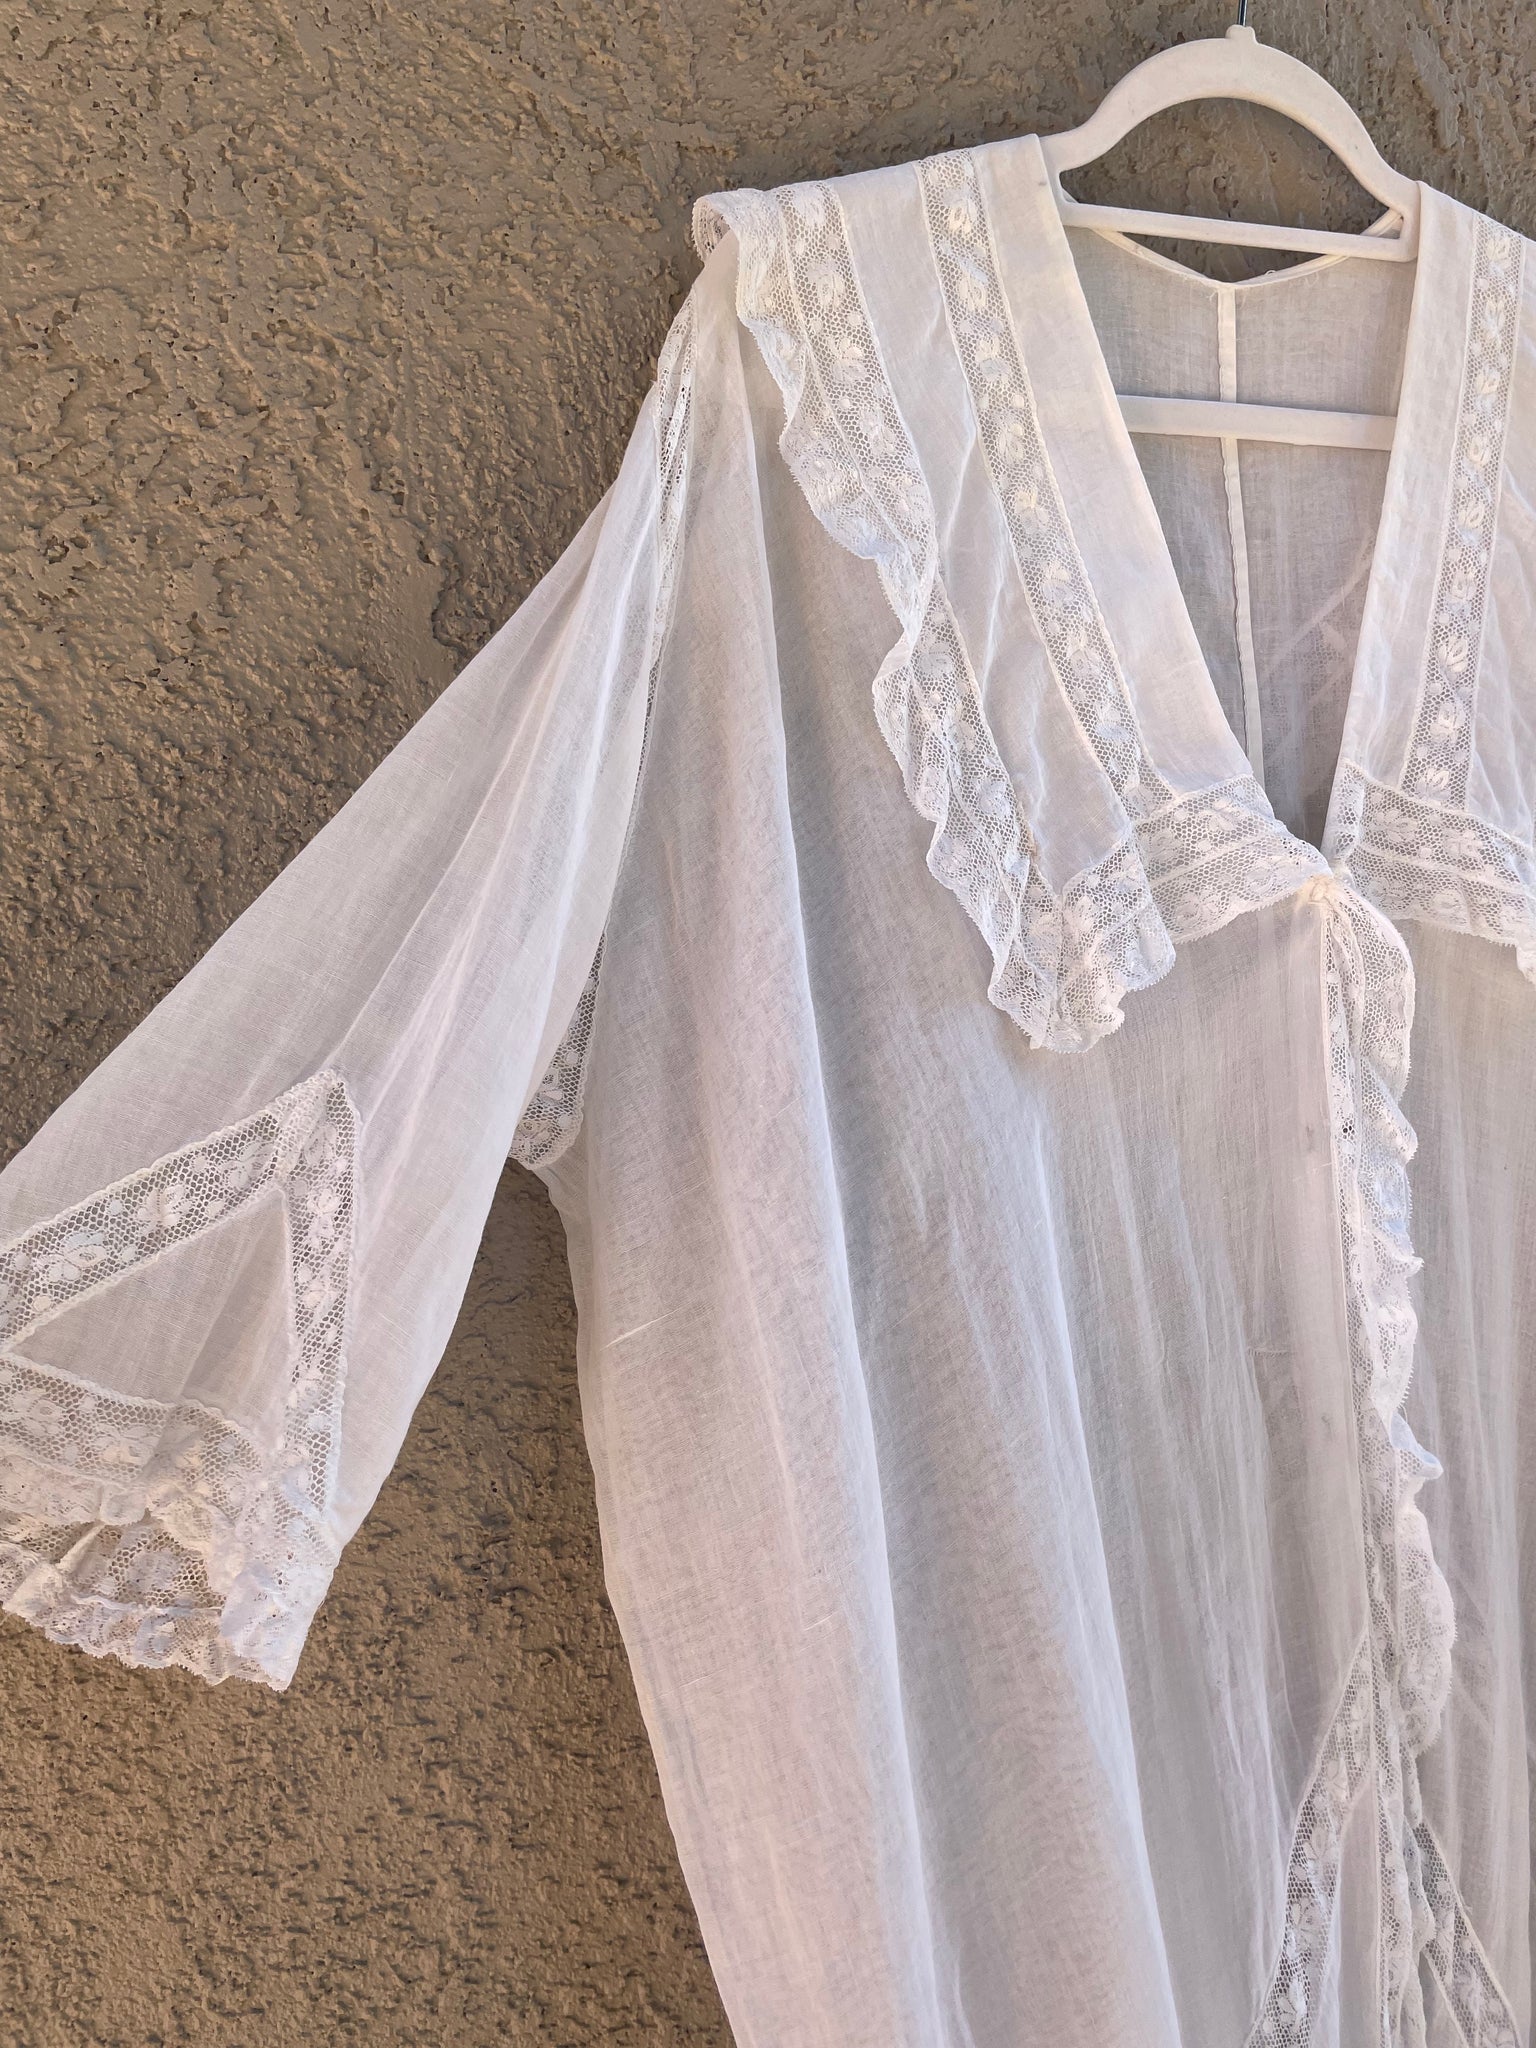 Antique 1910s Cocoon Style Cotton Voile & inset Lace Dressing Gown/ Peignoir